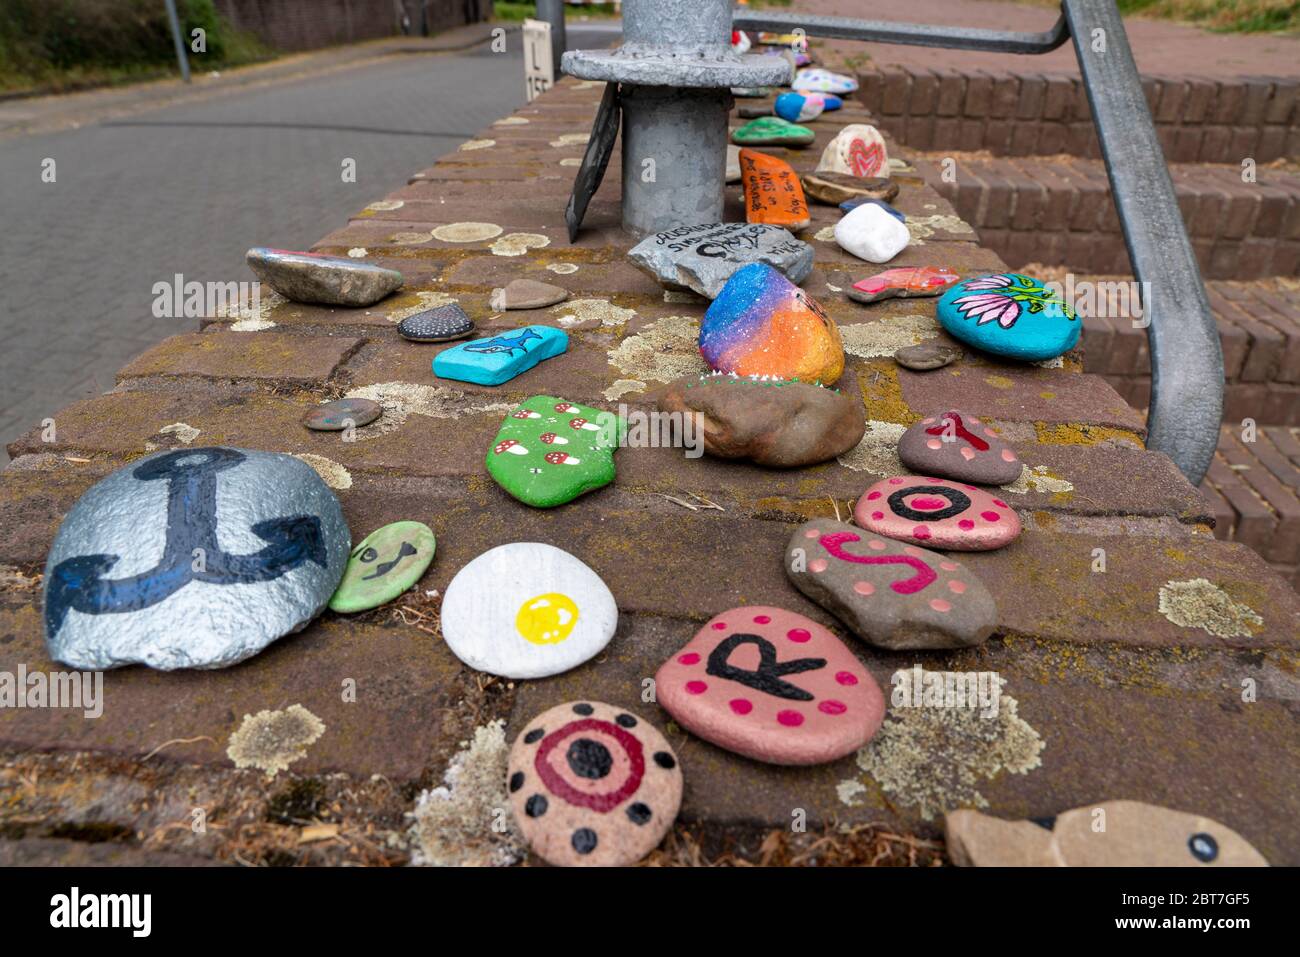 Bemalte Steine auf einer Mauer a Duisburg-Orsoy, s.g. Kinder, Steinschlangen, die meist Kinder bemalen und zu einer Reihe zusammen legen, Akti Foto Stock